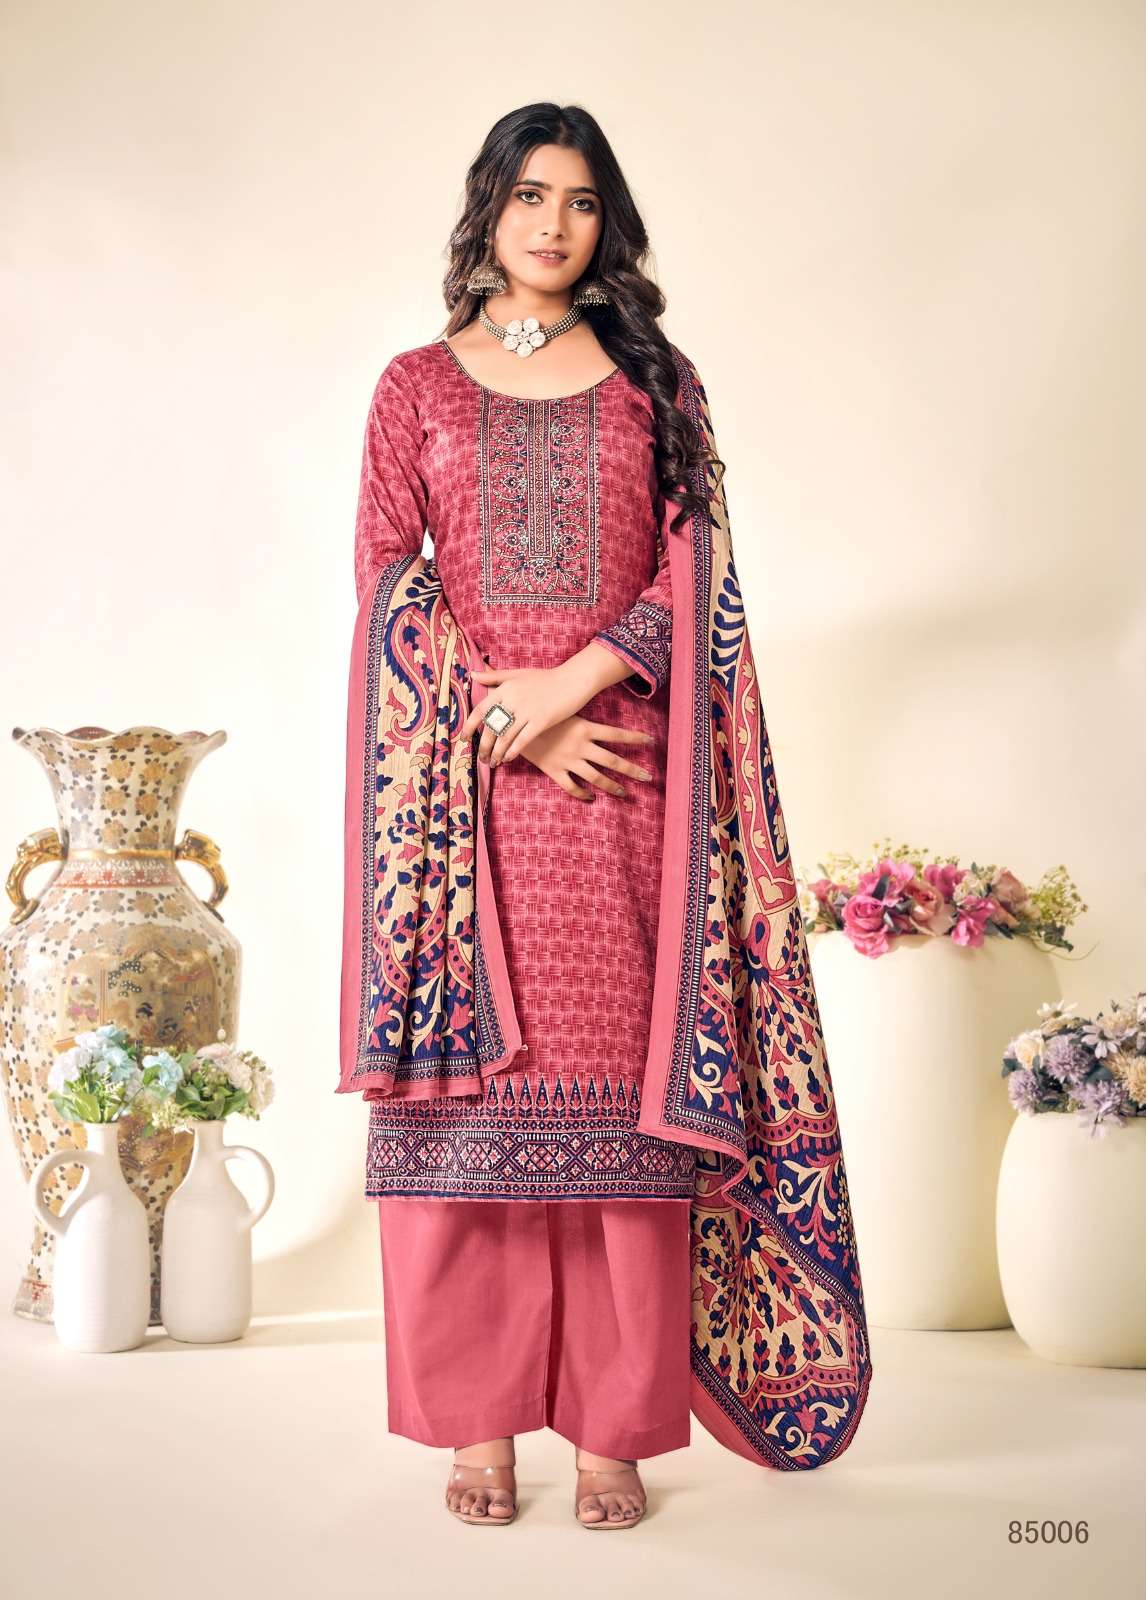 skt suits alison 85001-85008 series latest festive wear designer salwar kameez wholesaler surat gujarat